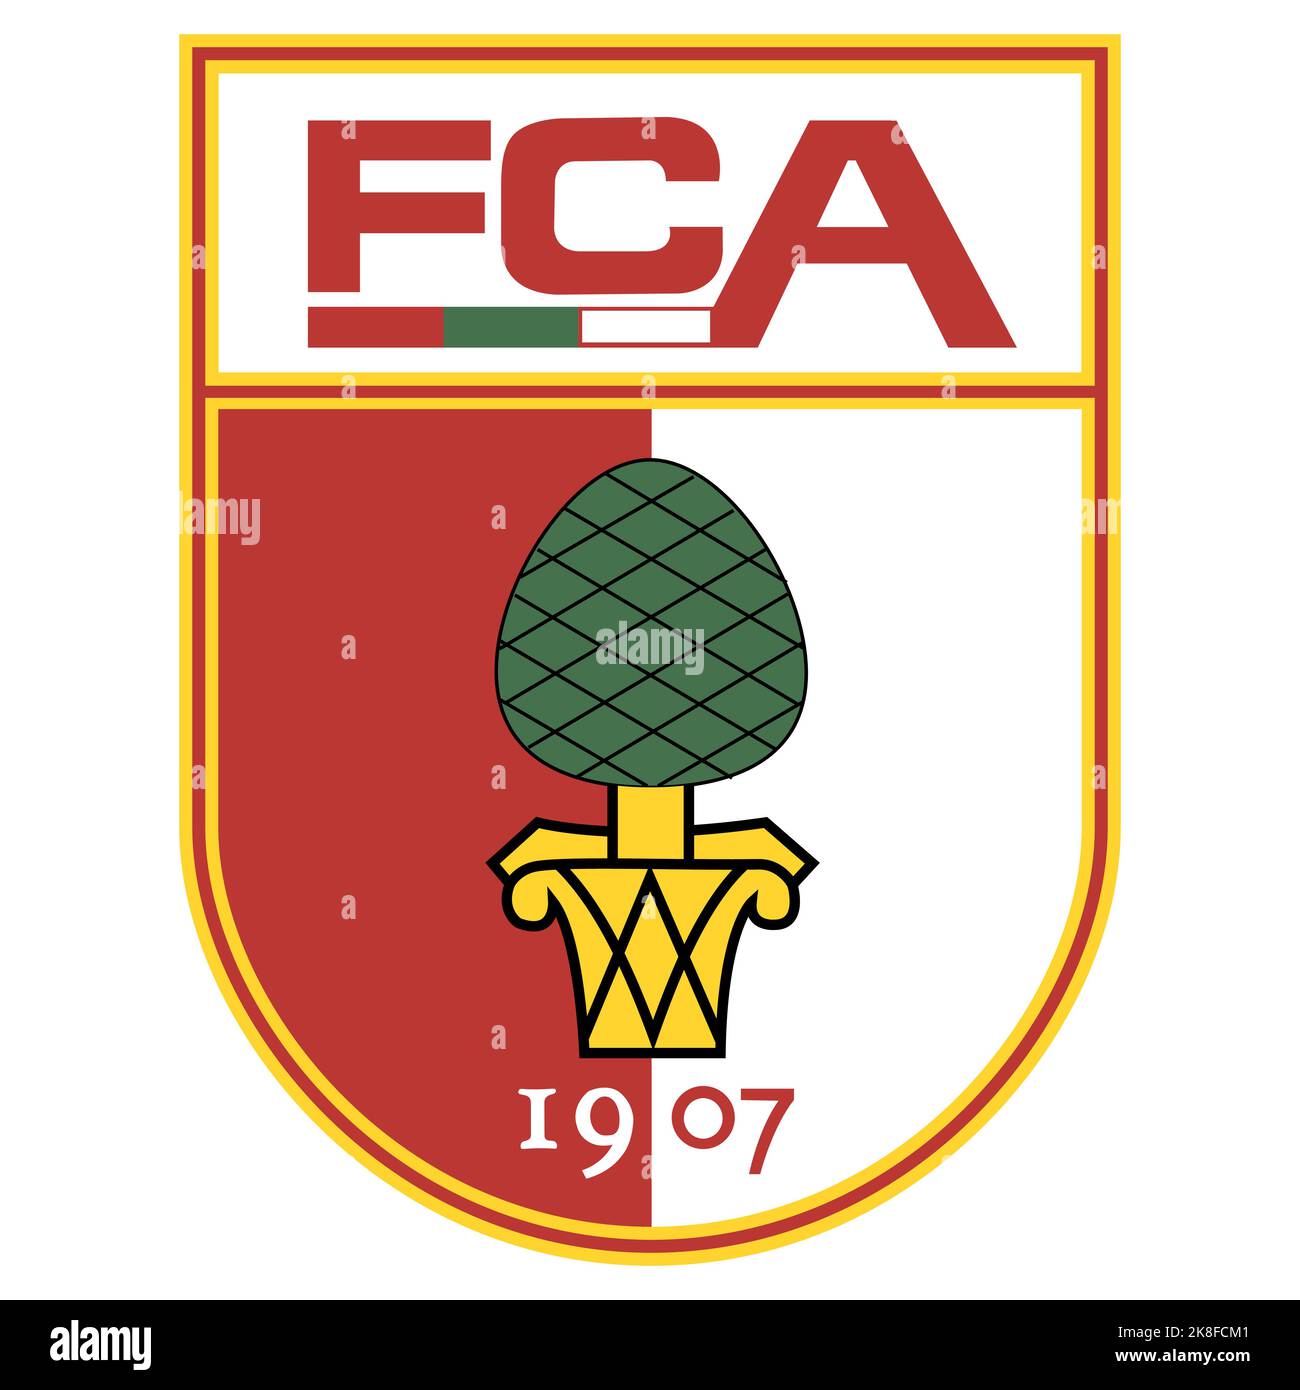 Francoforte sul meno, Germania - 10.23.2022 Logo della squadra di calcio tedesca Augsburg. Immagine vettoriale Illustrazione Vettoriale